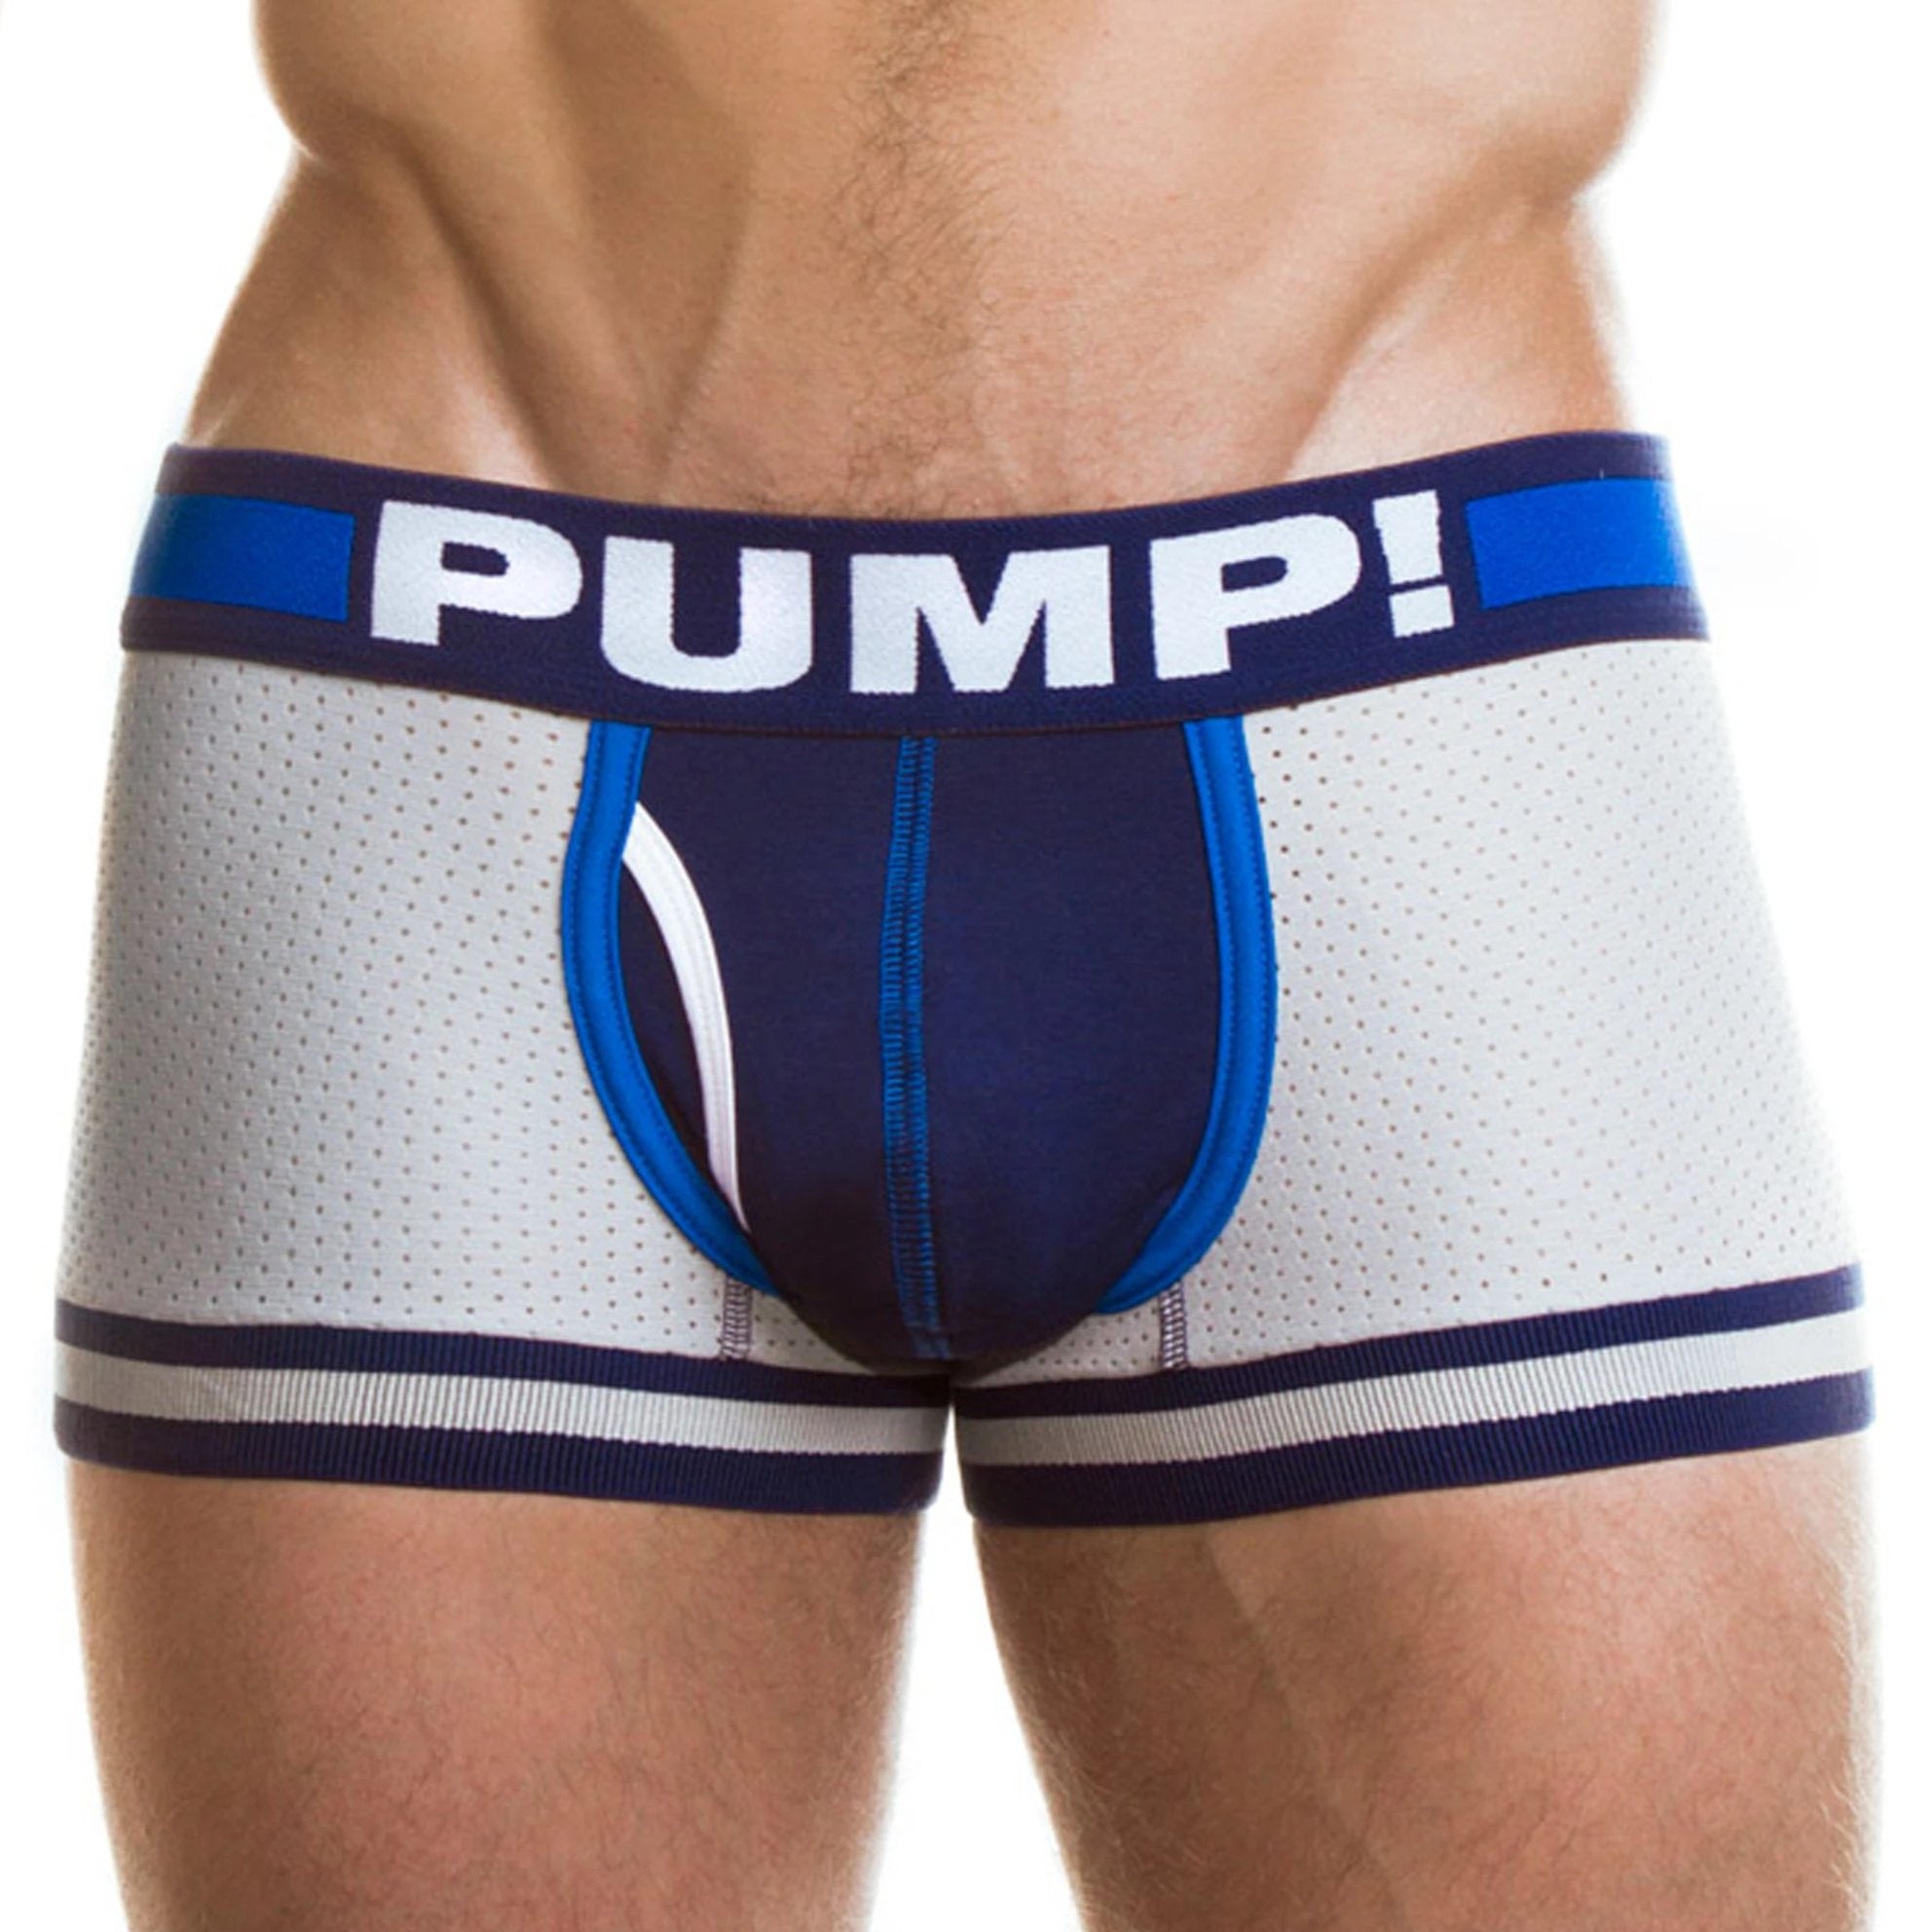 Touchdown Iron Clad Front by PUMP! Underwear at Trenderwear.com